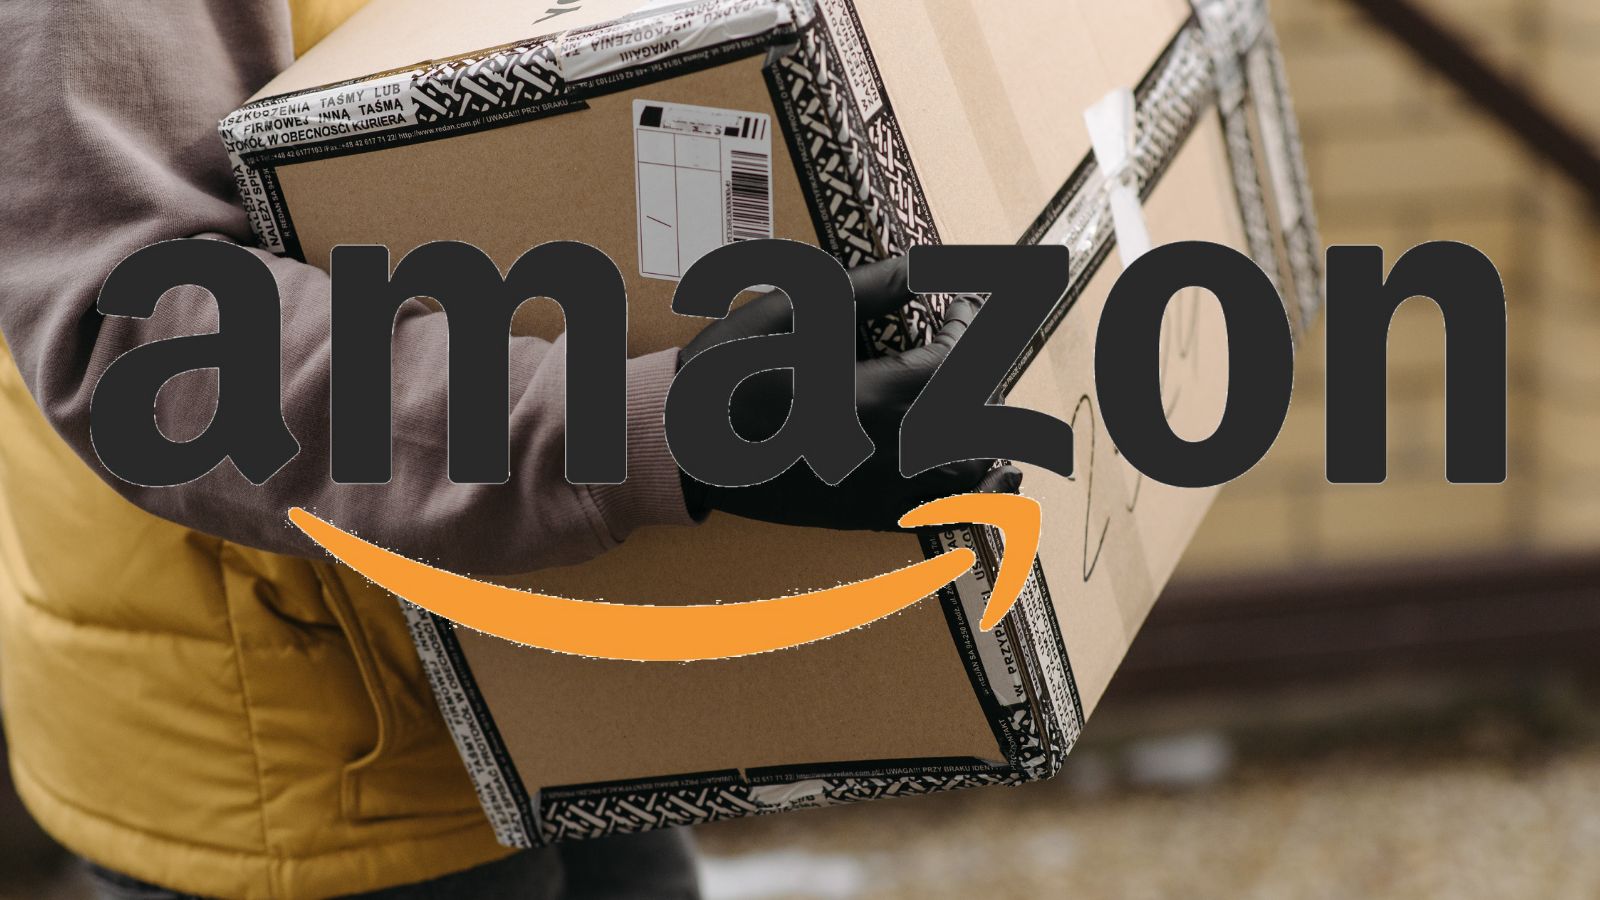 Amazon IMPAZZISCE con offerte al 90% di sconto e smartphone GRATIS